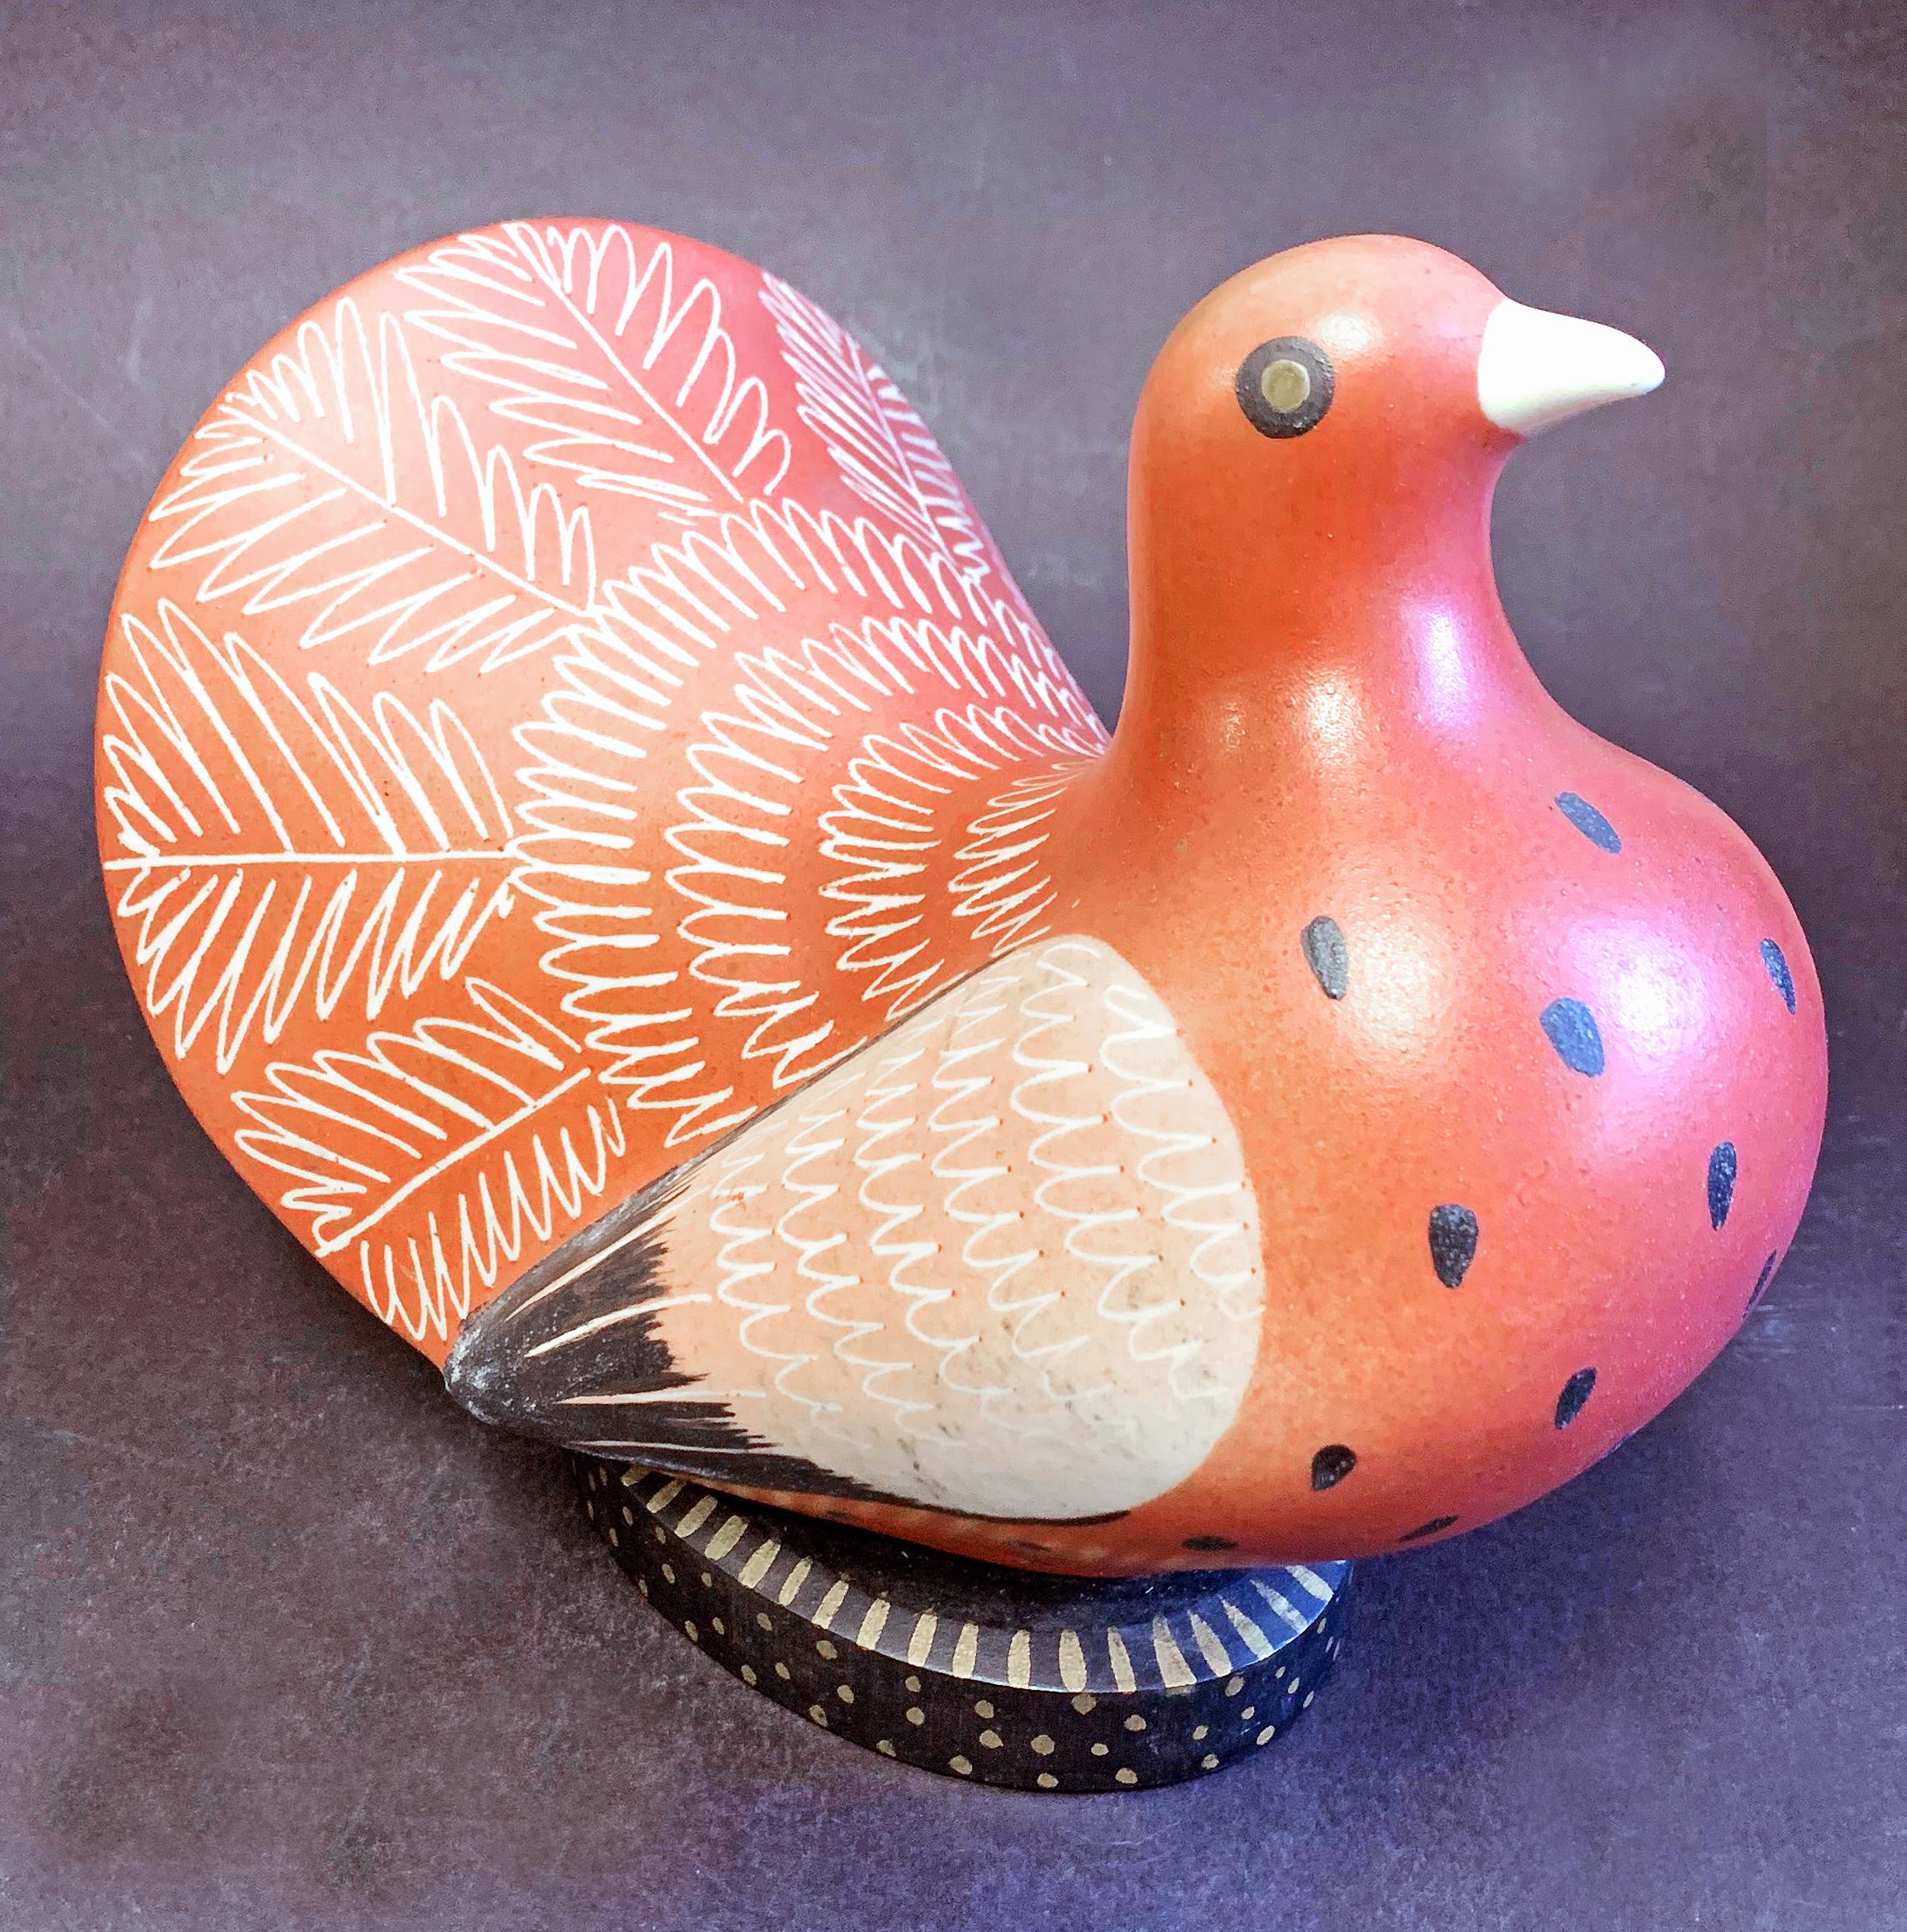 Rare et magnifique exemple des sculptures en porcelaine de Waylande Gregory, cette représentation d'un pigeon à queue de pie en rose foncé et blanc poussiéreux date des années 1940 ou 1950. Gregory a été prodigieux et infatigable au cours d'une